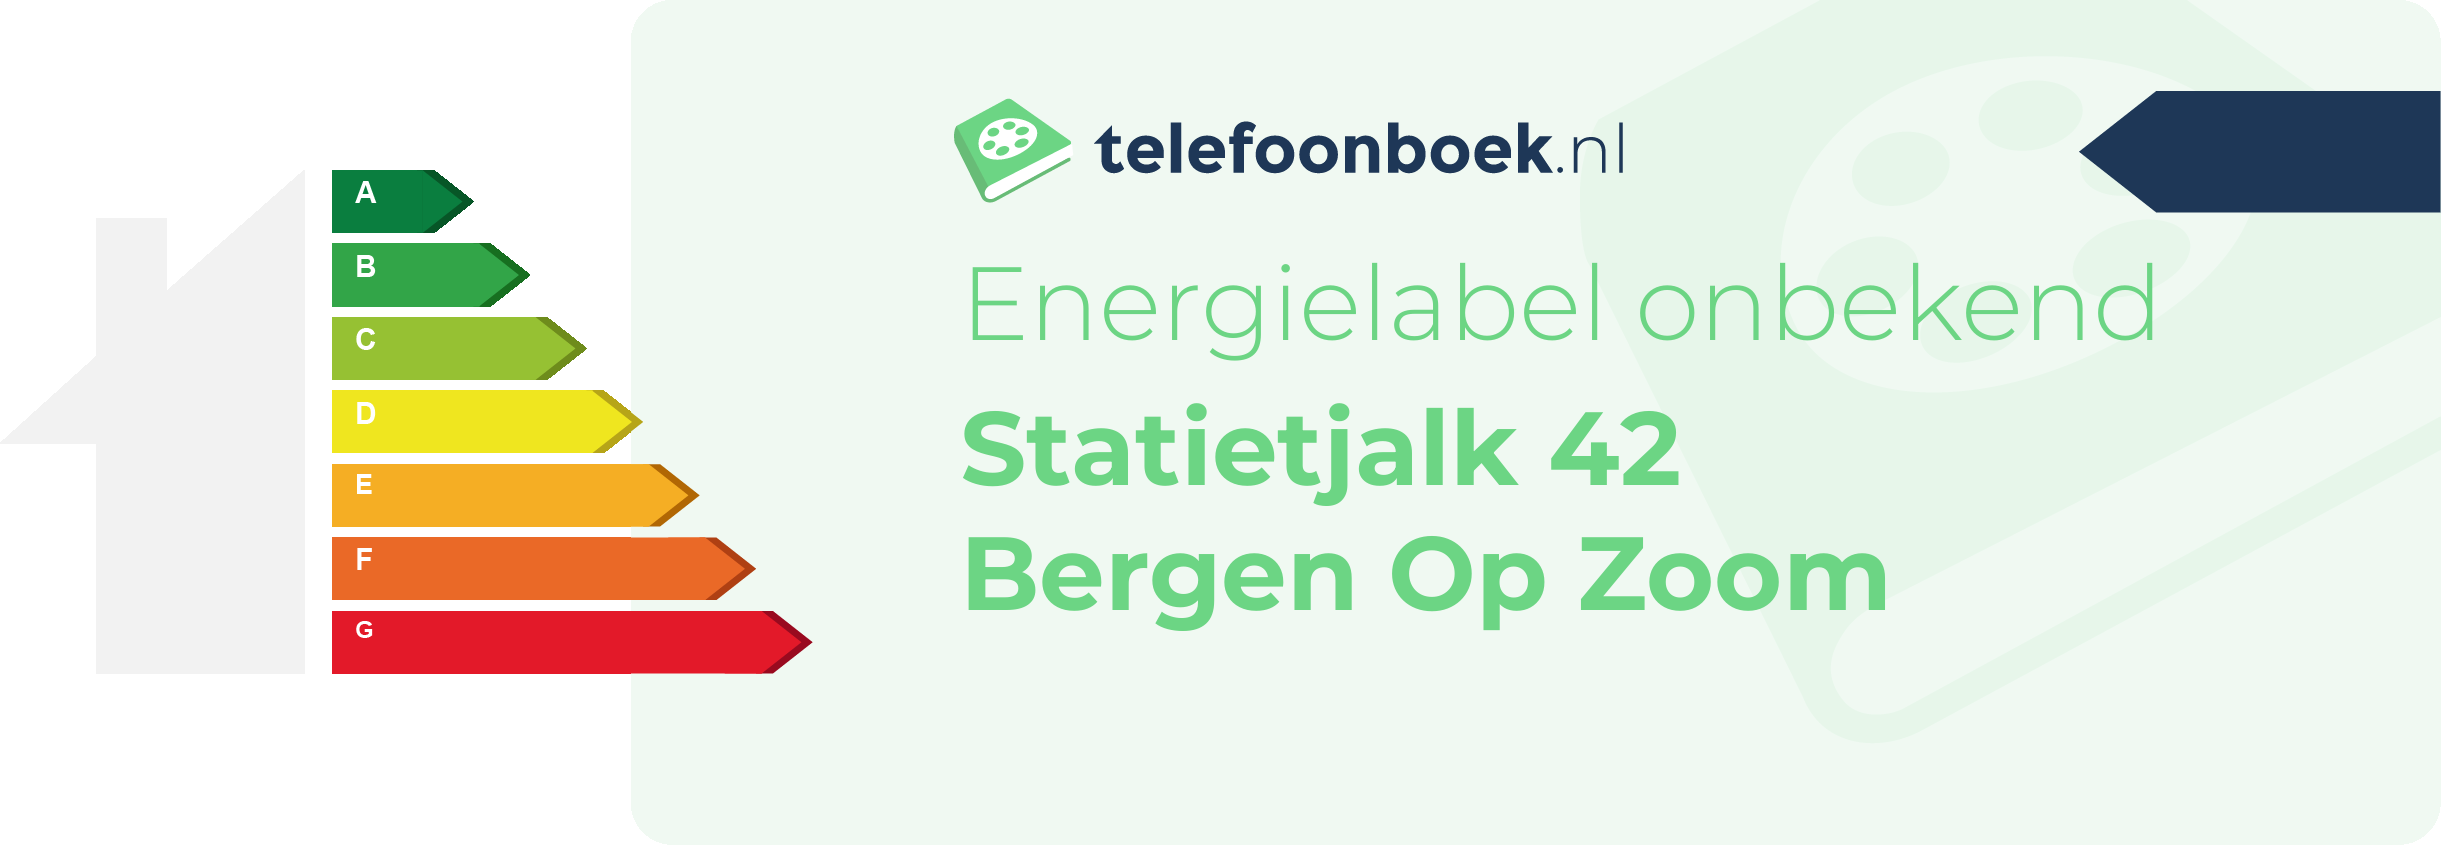 Energielabel Statietjalk 42 Bergen Op Zoom